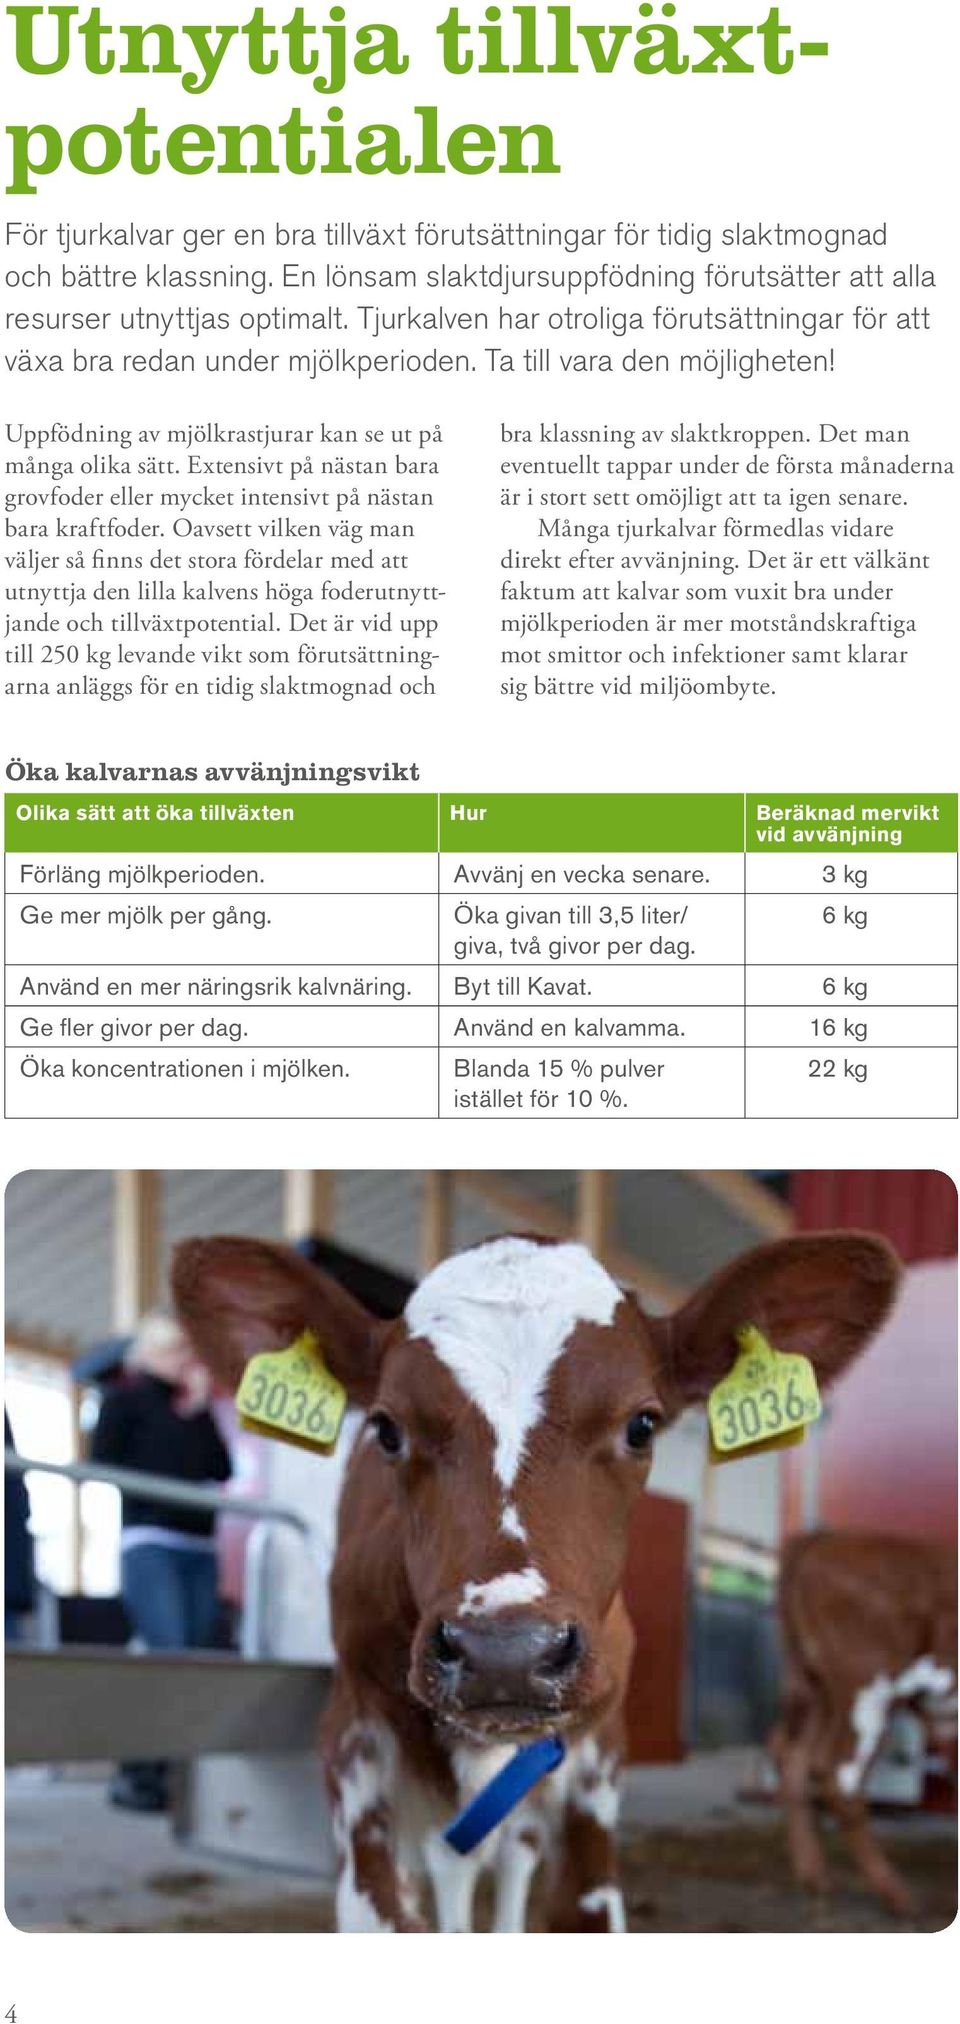 Uppfödning av mjölkrastjurar kan se ut på många olika sätt. Extensivt på nästan bara grovfoder eller mycket intensivt på nästan bara kraftfoder.